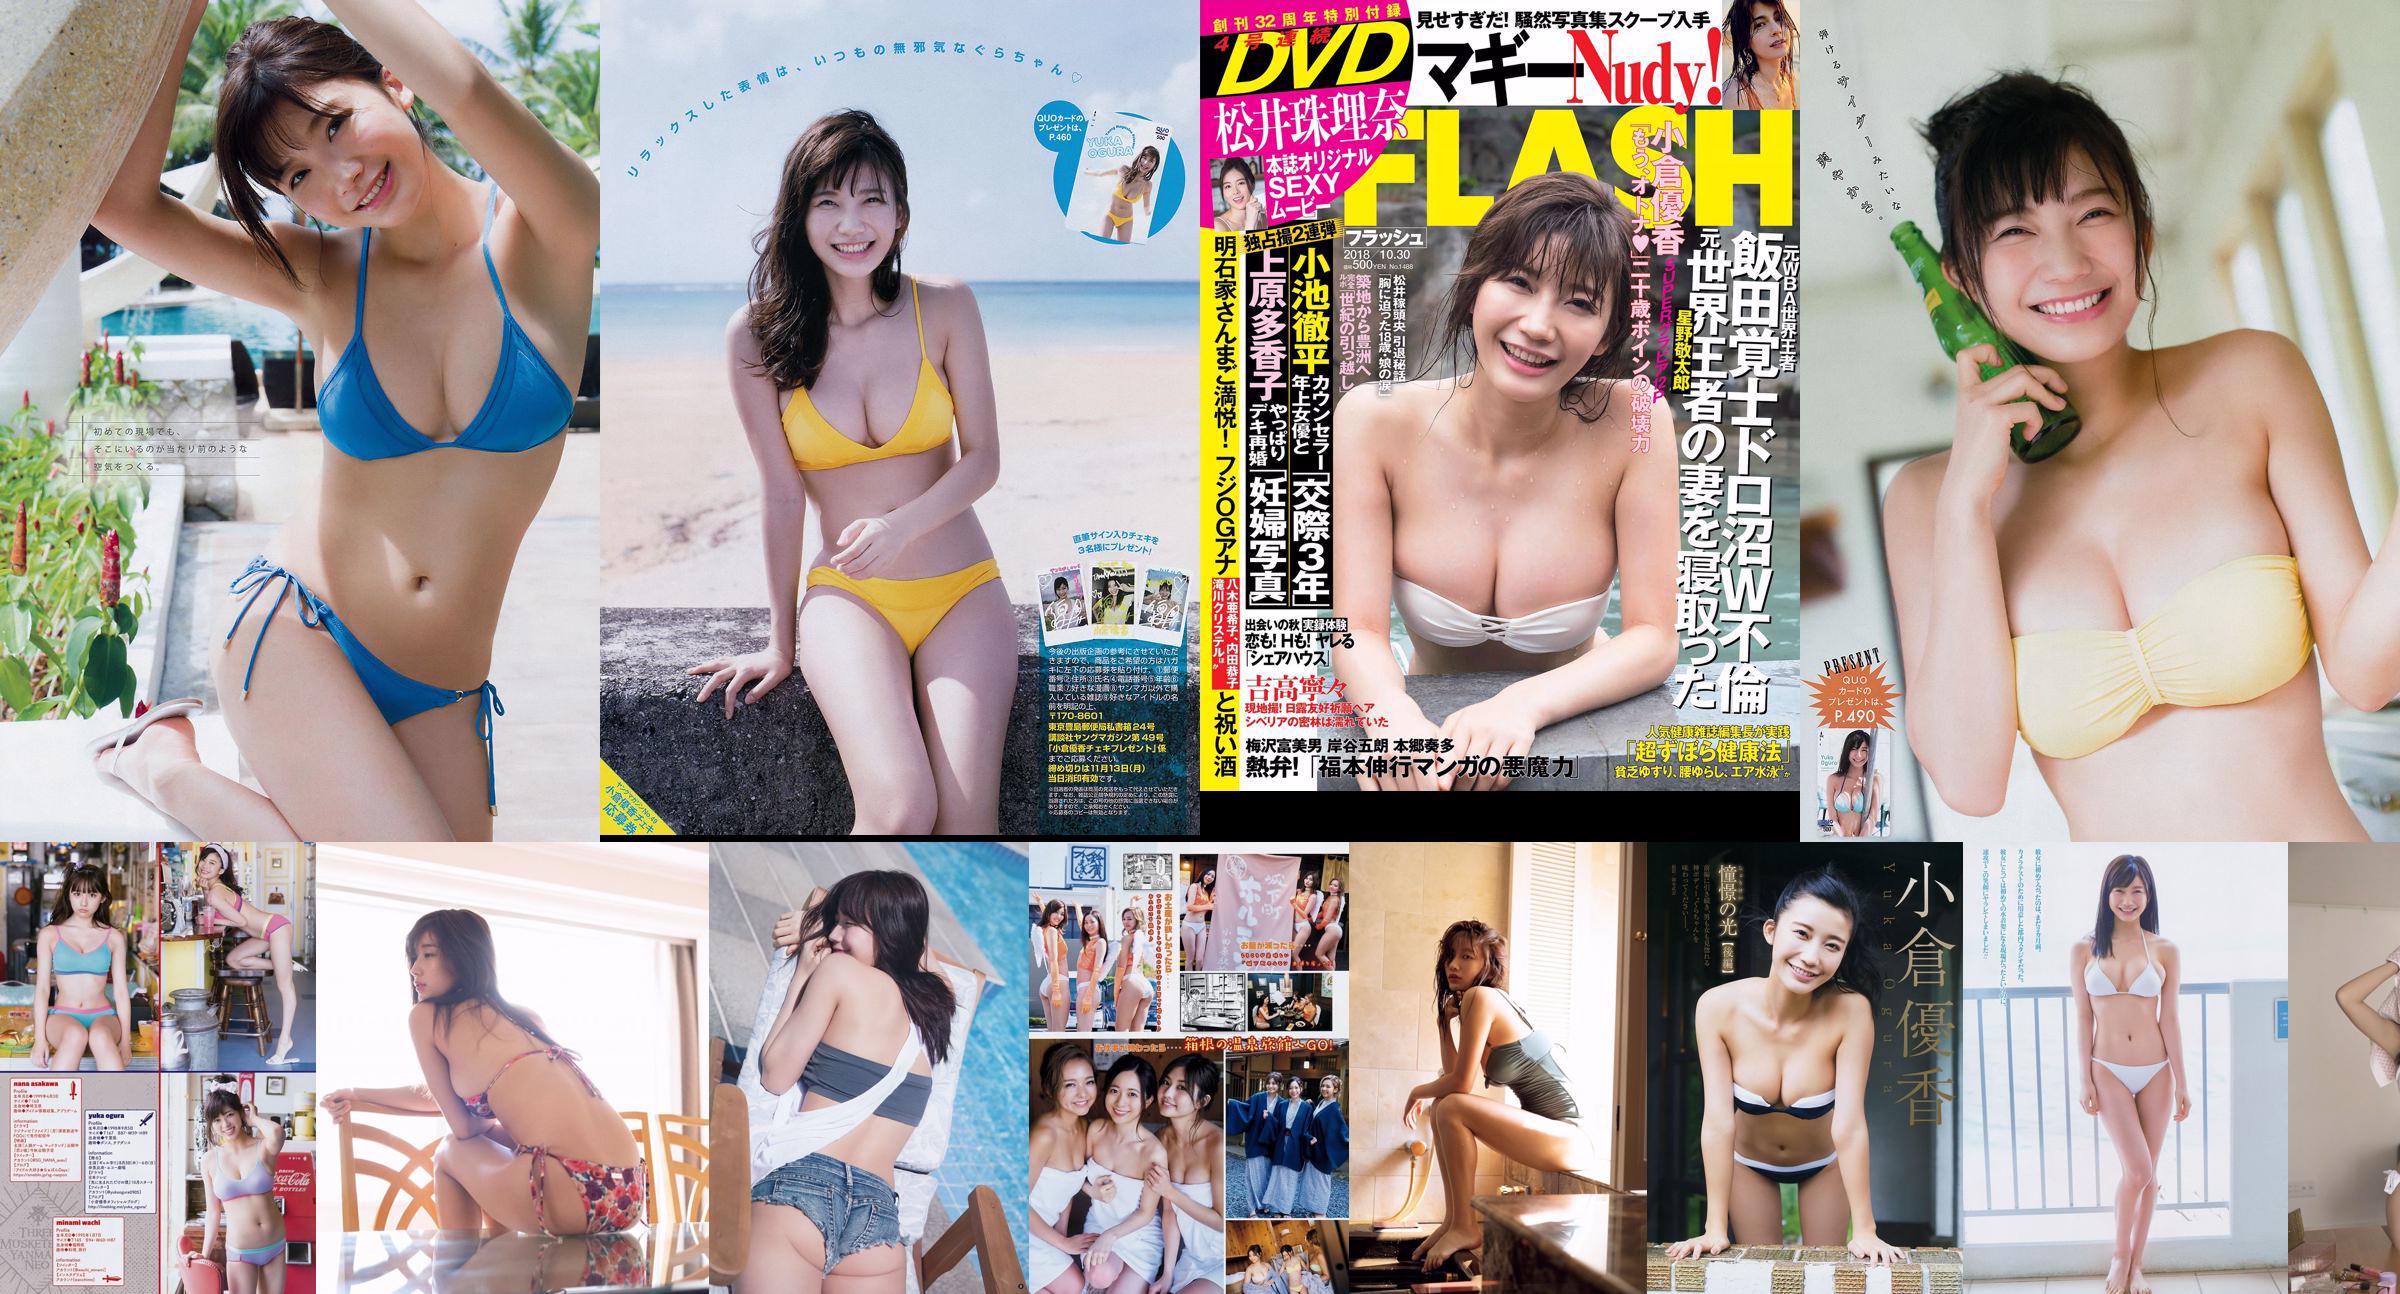 [Weekly Big Comic Spirits] Yuka 2013 No.26 Photo Magazine No.f2afd6 Page 1